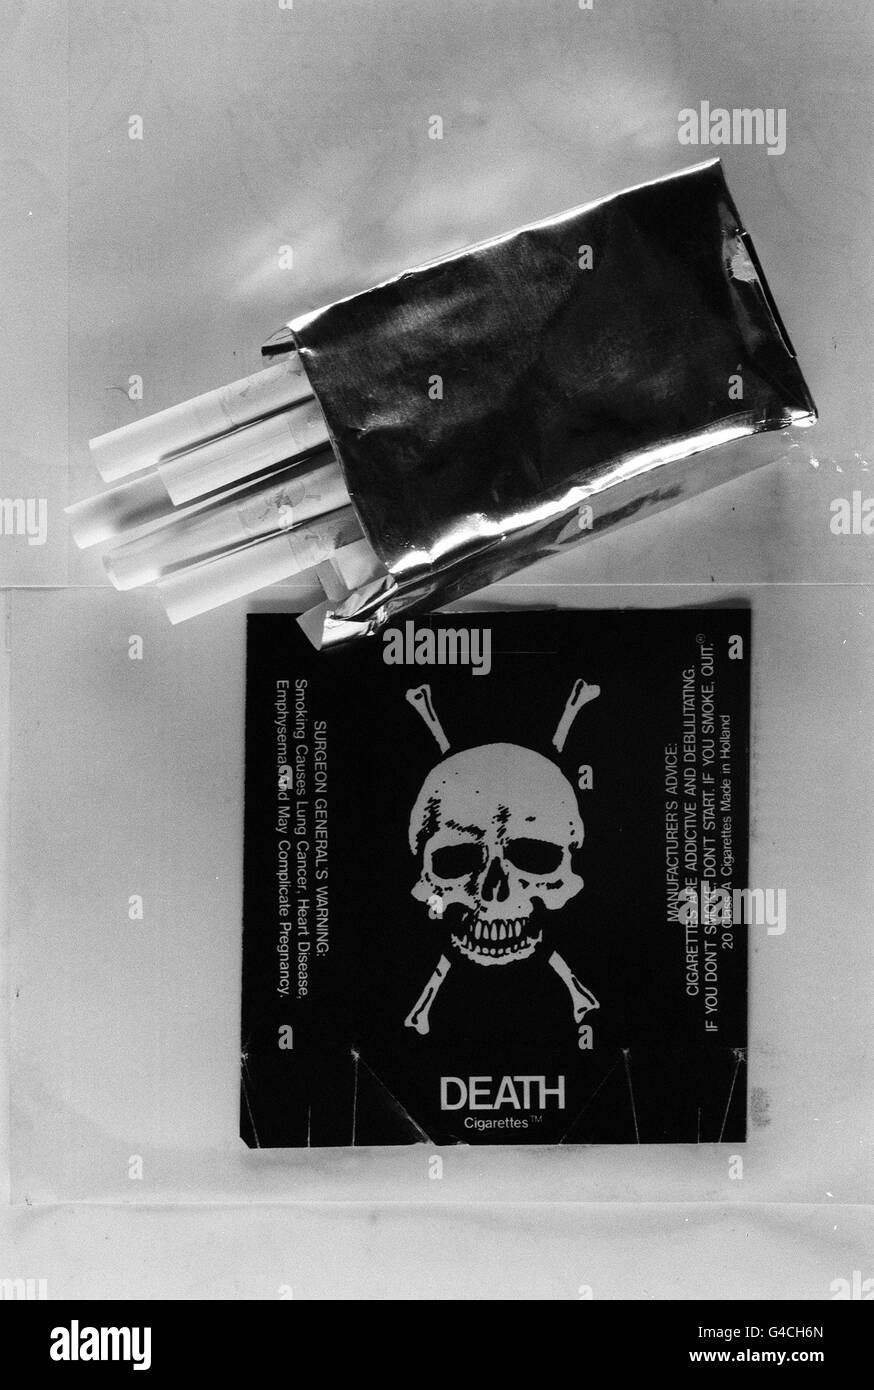 PA NEWS PHOTO 18/12/91 UNE NOUVELLE MARQUE DE CIGARETTES APPELÉE 'DEATH' Banque D'Images